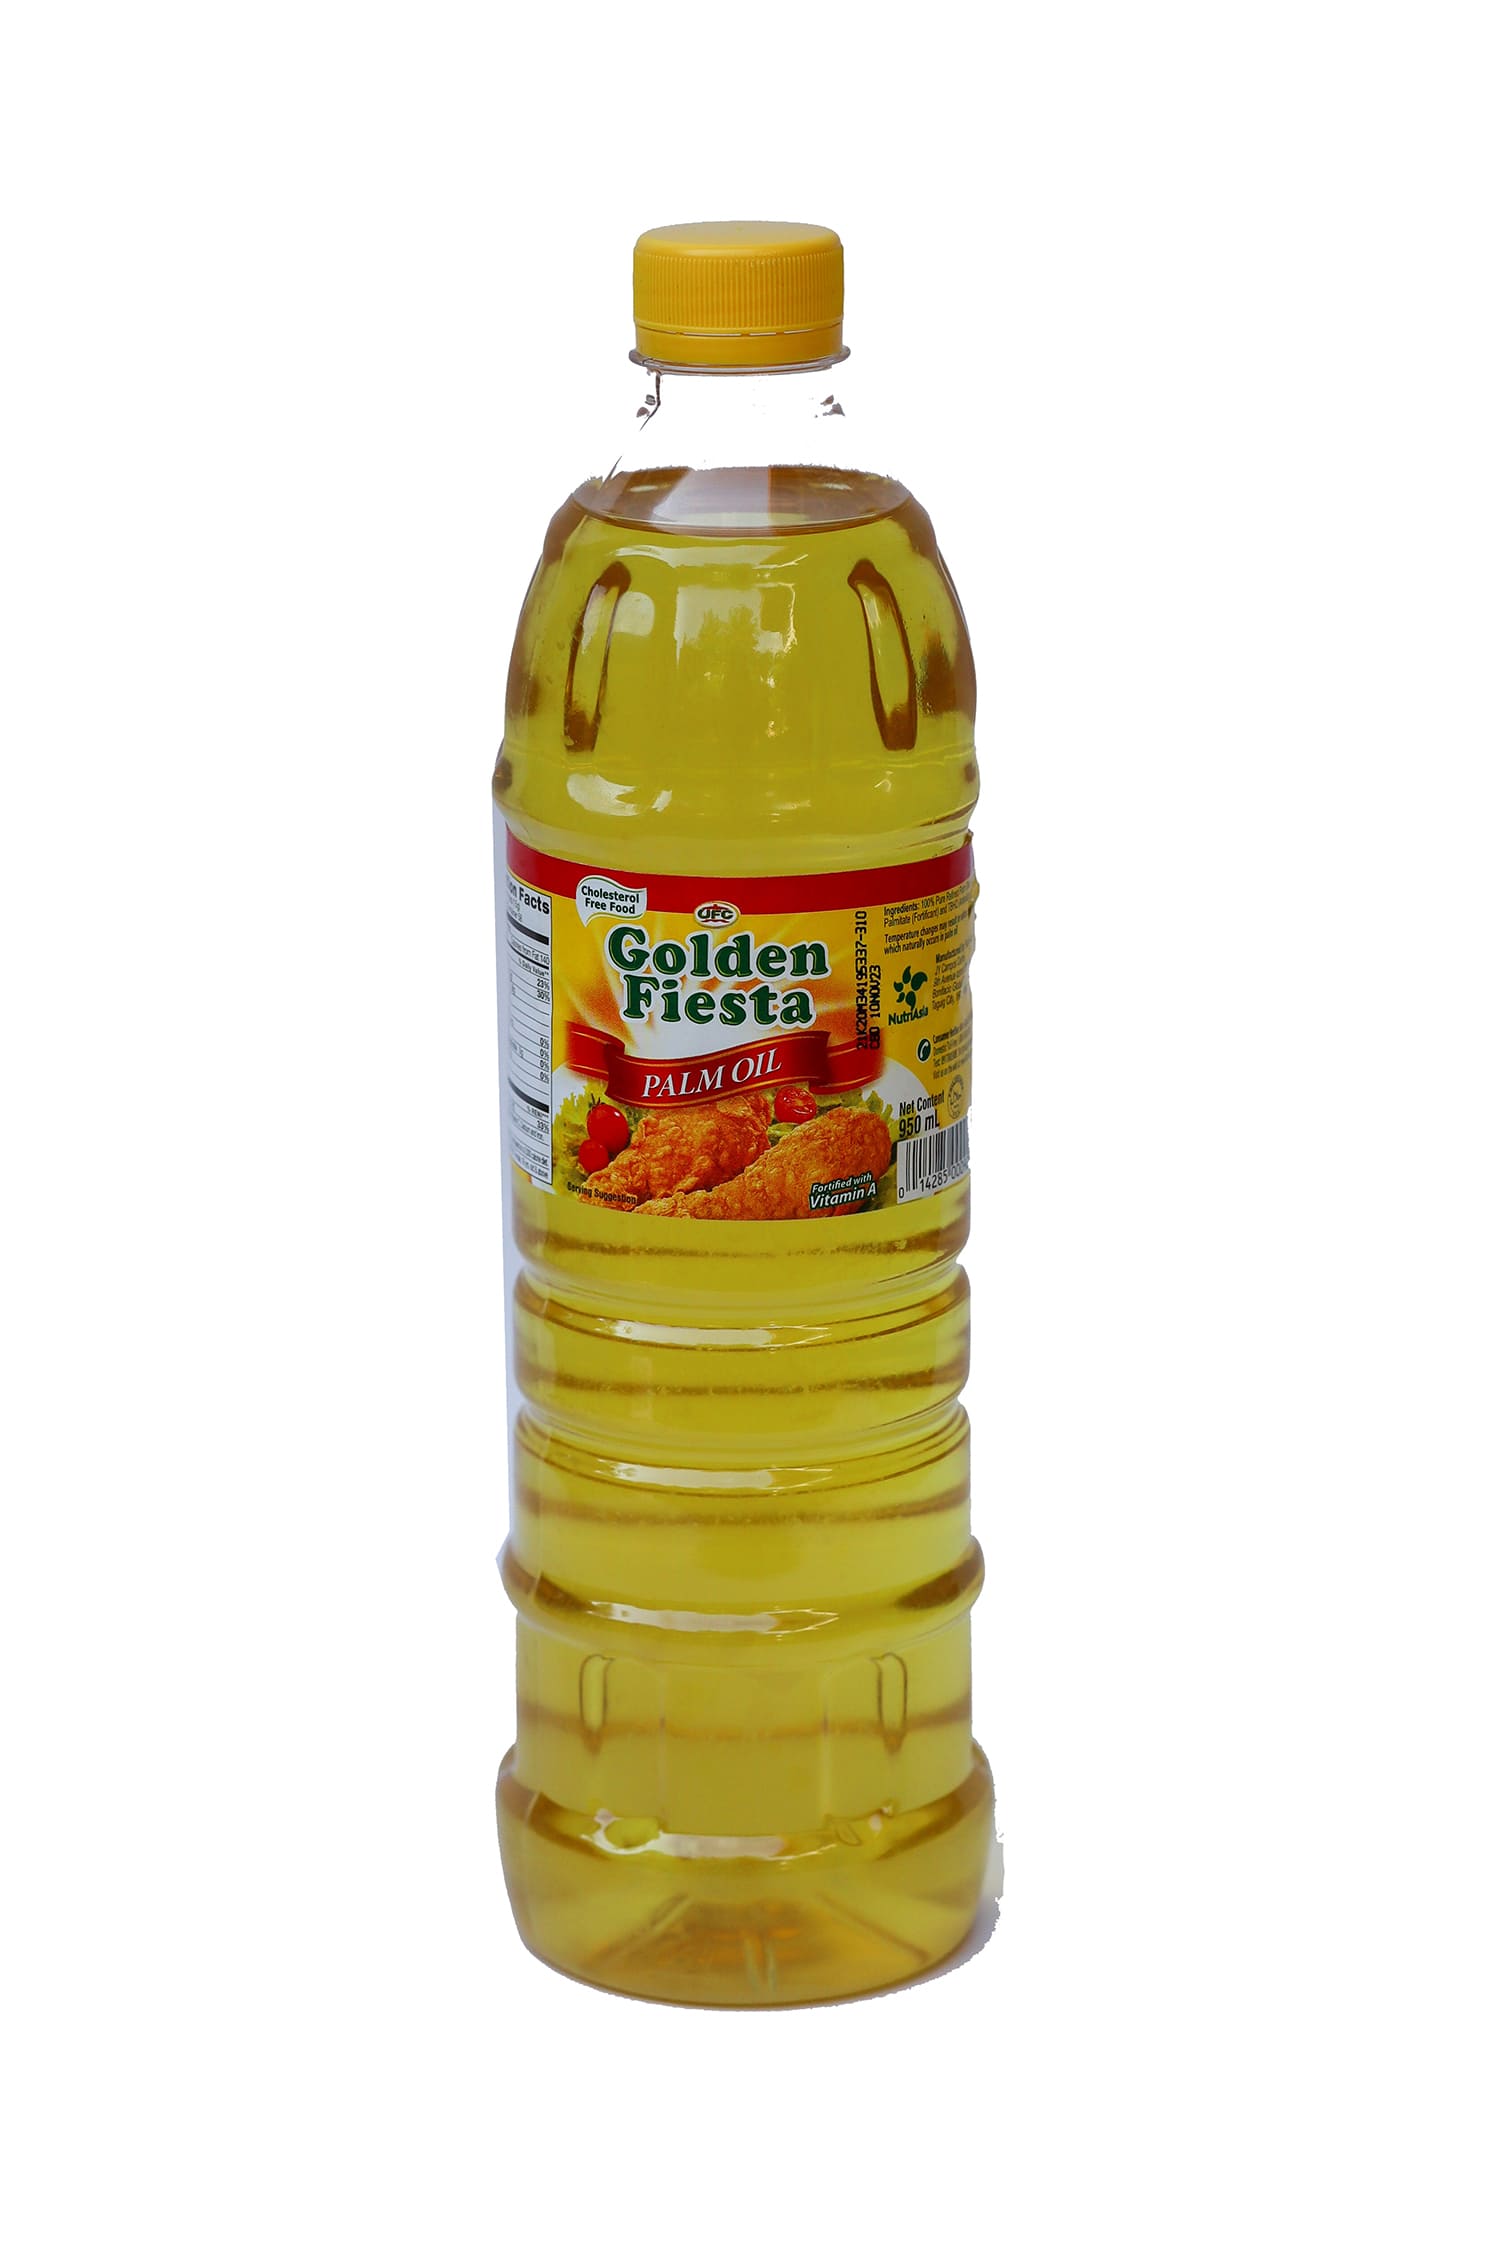 Palm Oil Golden Fiesta